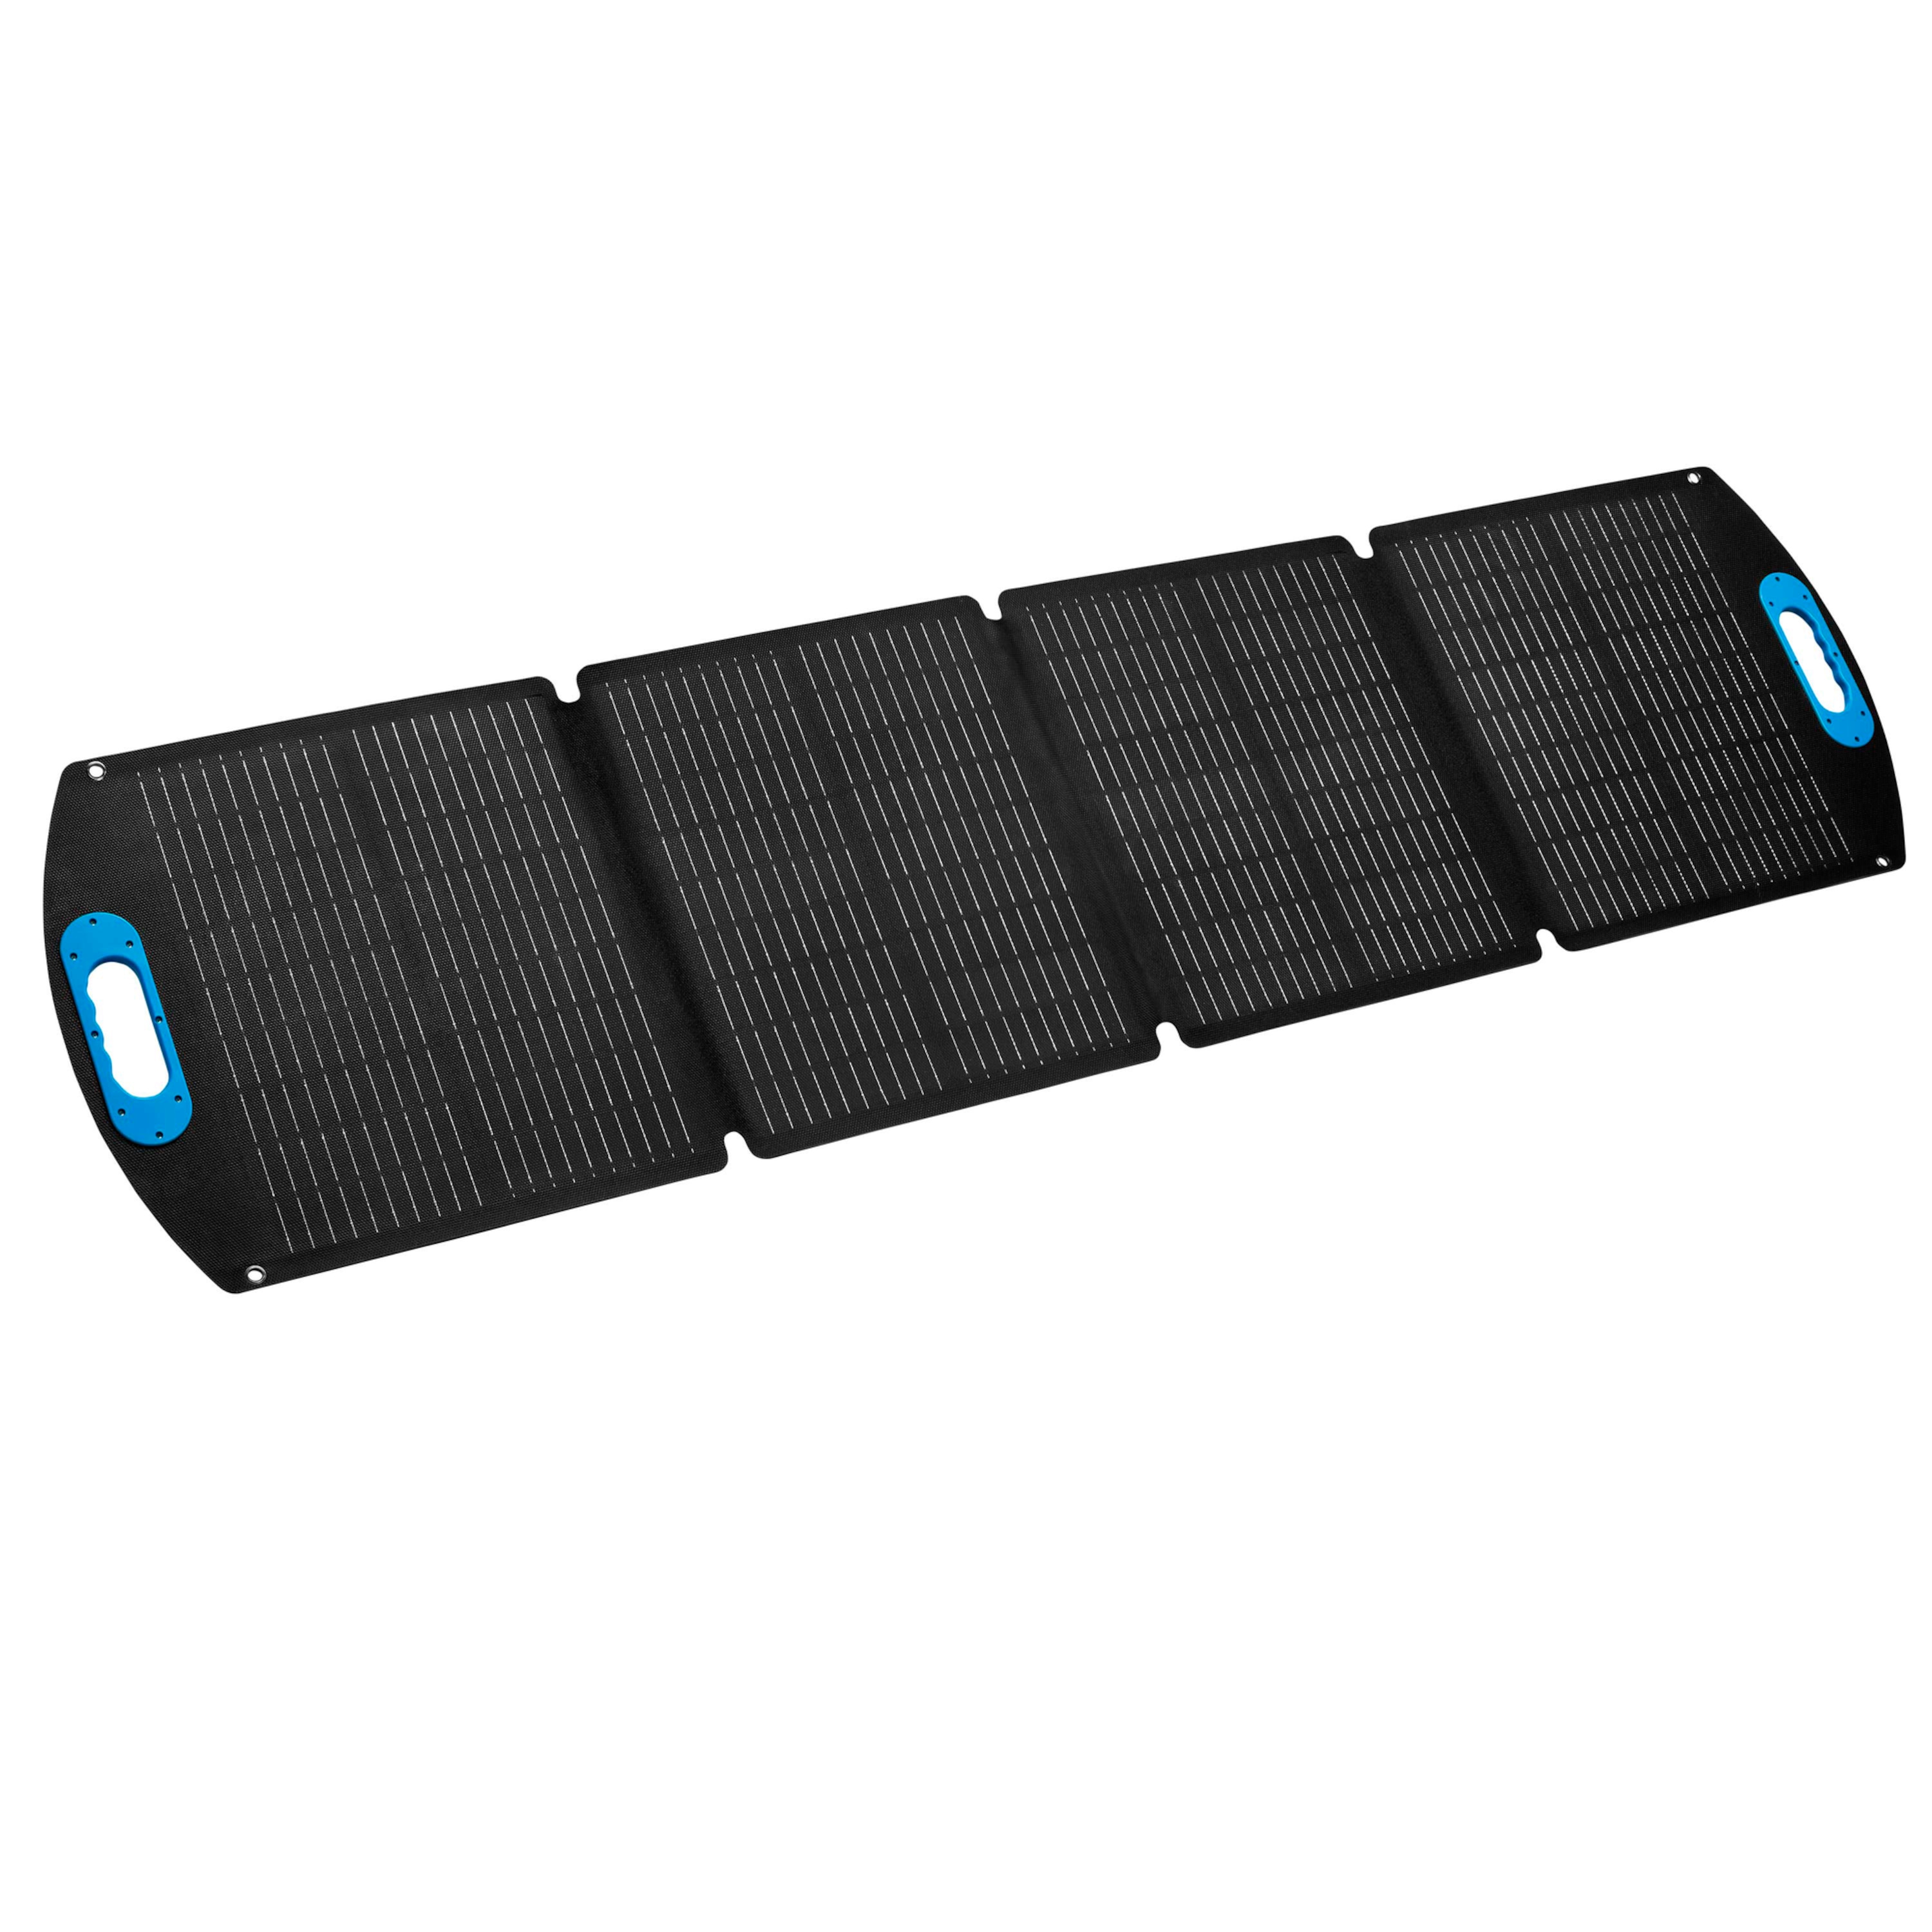 Solarpanel 2 günstig Kaufen-MEDION Faltbares Solarpanel (MD43680), Spitzenausgangsleistung von 120 Watt, Effizienter Wirkungsgrad von bis zu 23,4 %, USB Konverter Box (USB-A, USB-C, MC4). MEDION Faltbares Solarpanel (MD43680), Spitzenausgangsleistung von 120 Watt, Effizienter Wirkun